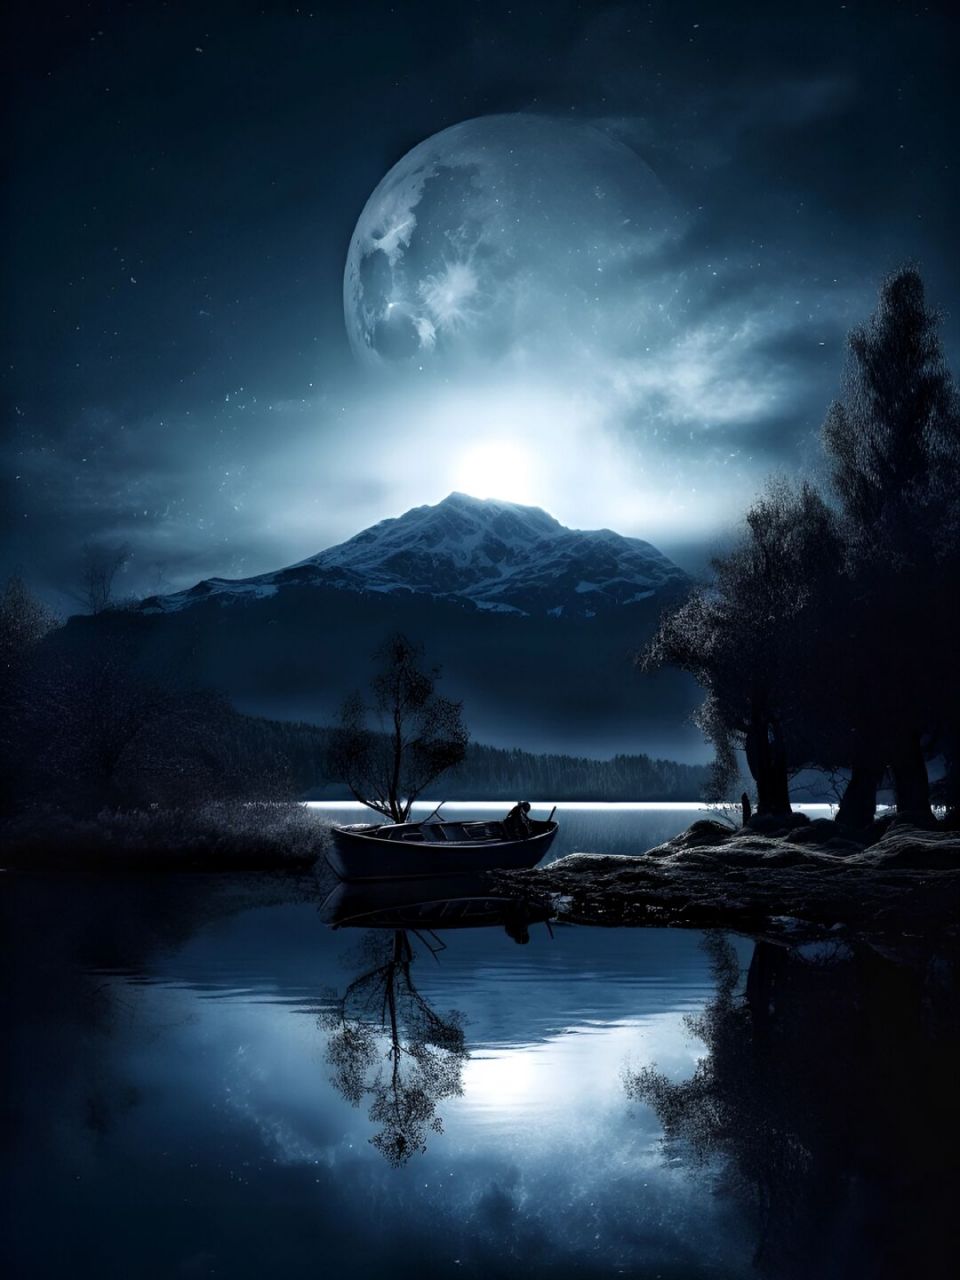 夜深了人静了,我只想好好享受这份宁静 湖畔夜色,月光洒落在水面上